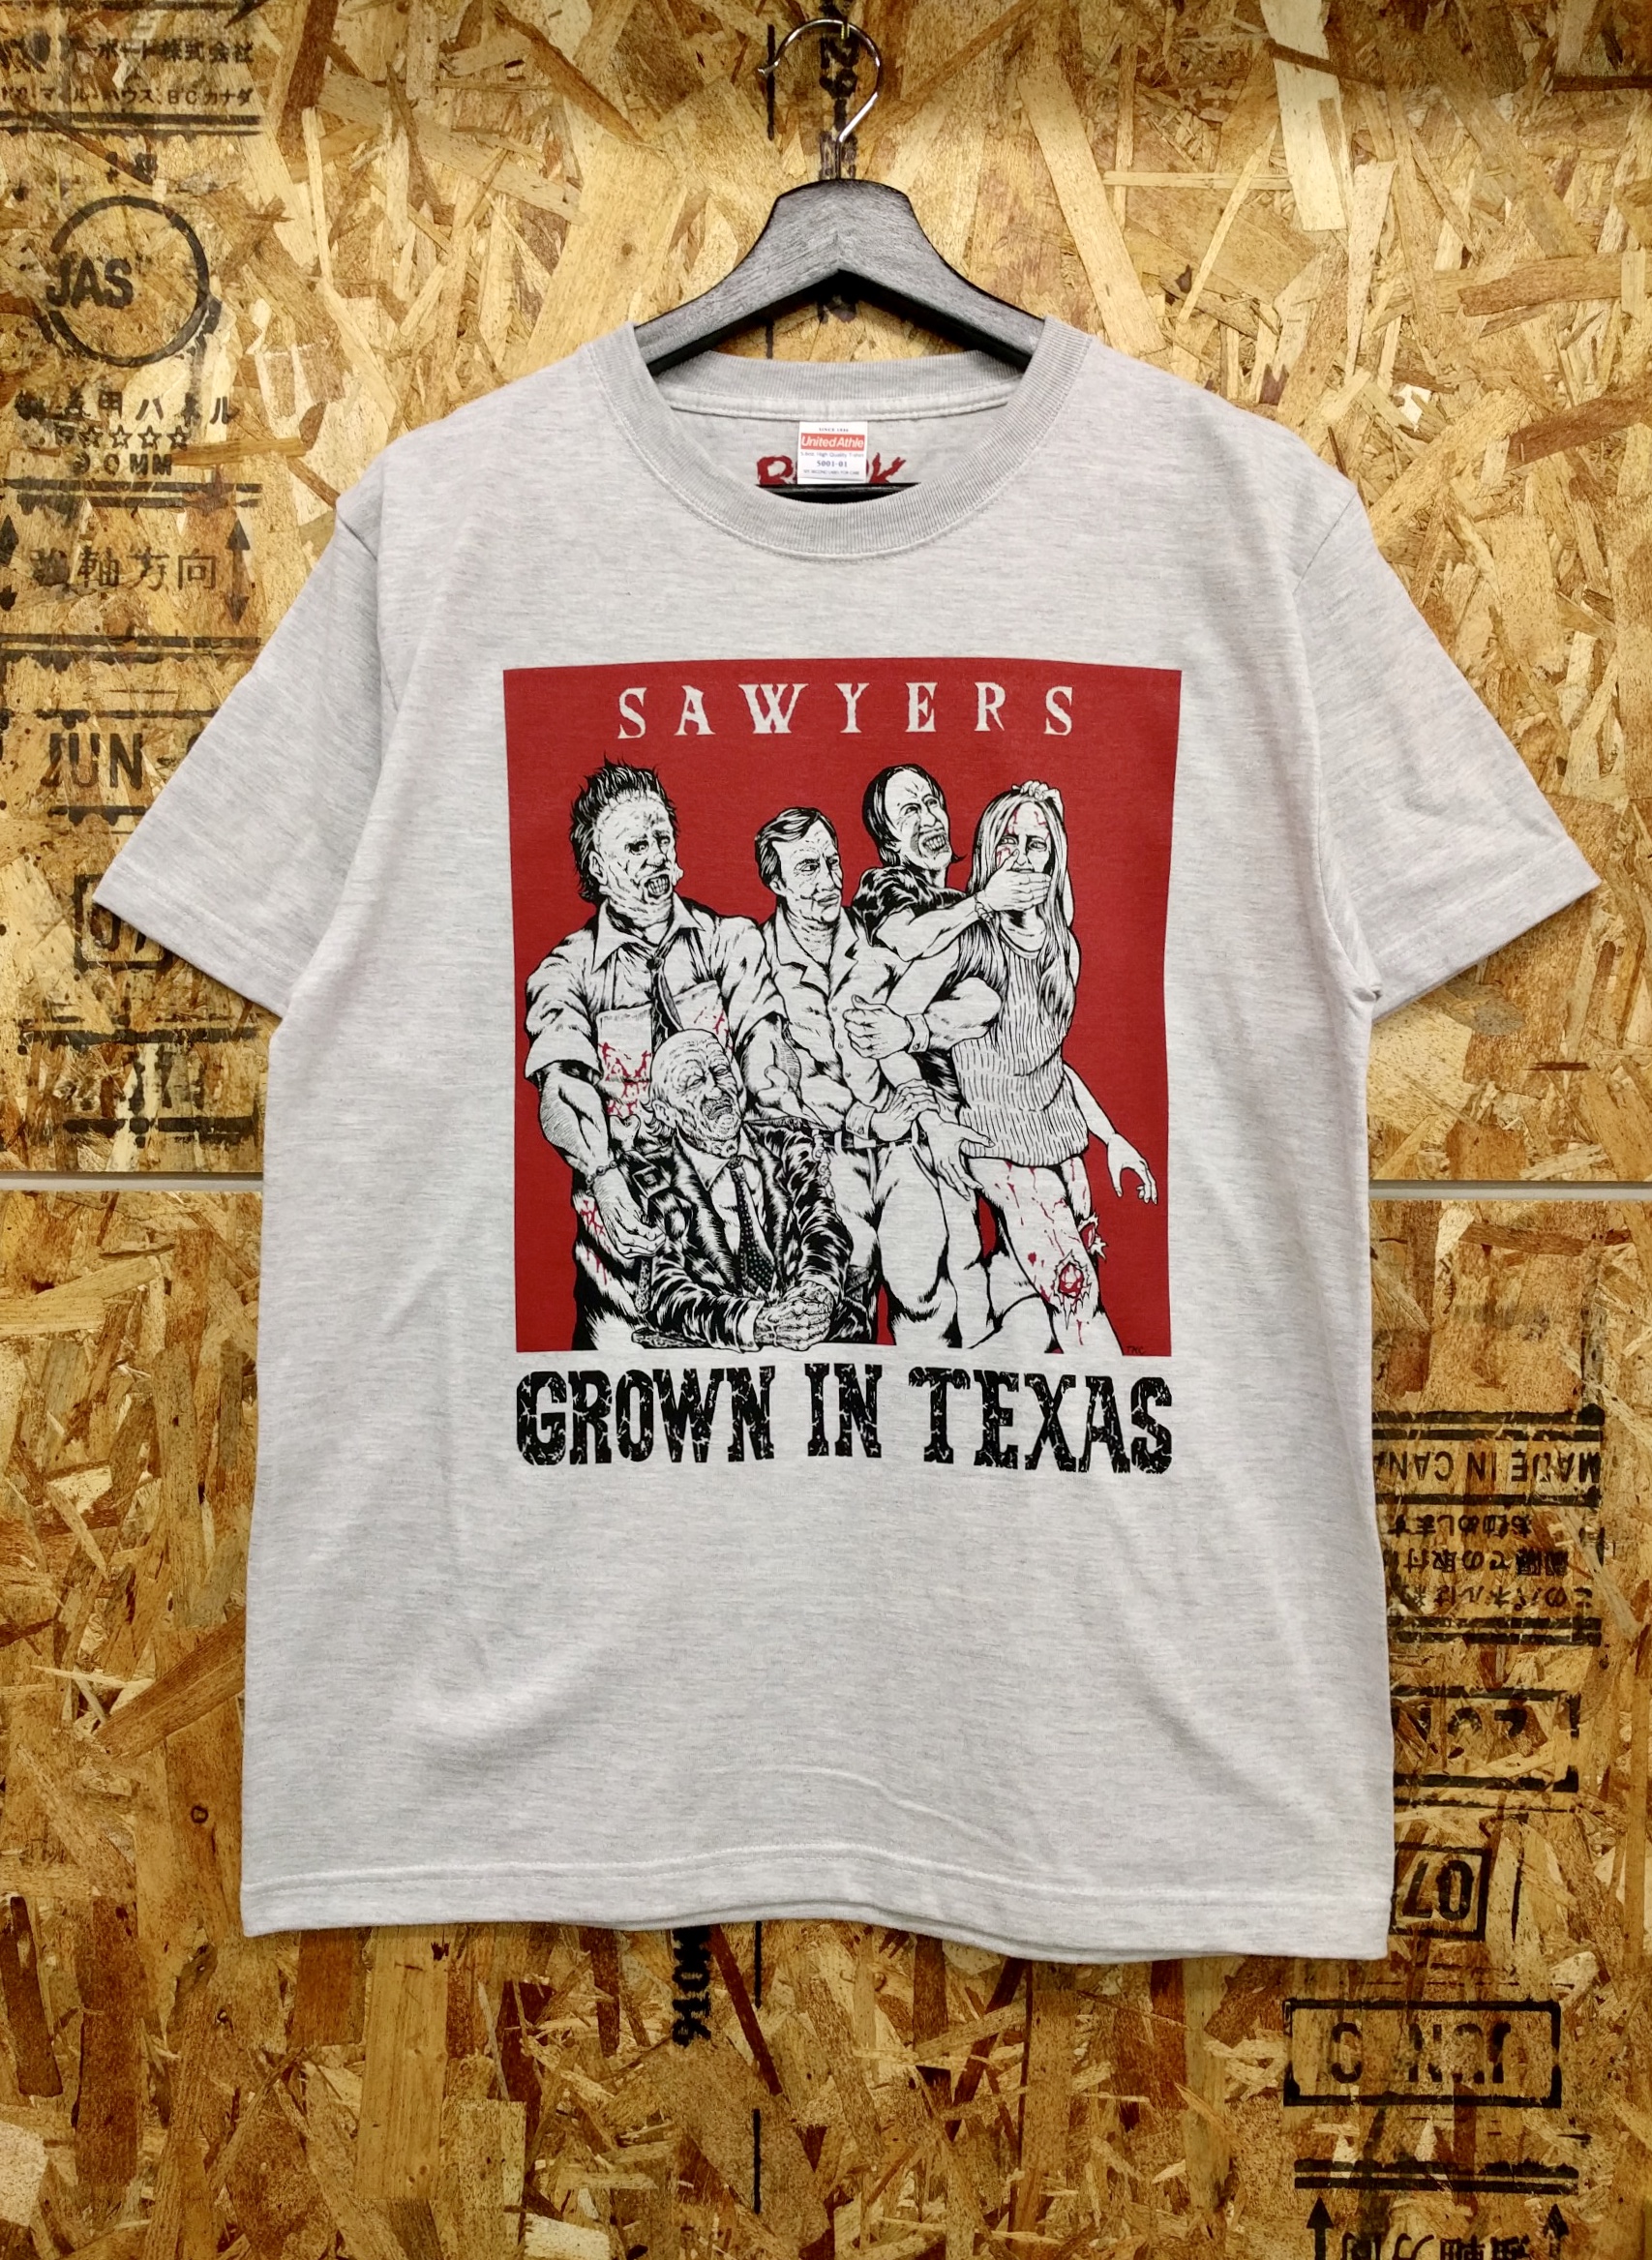 Sawyers Tシャツ完売しました。